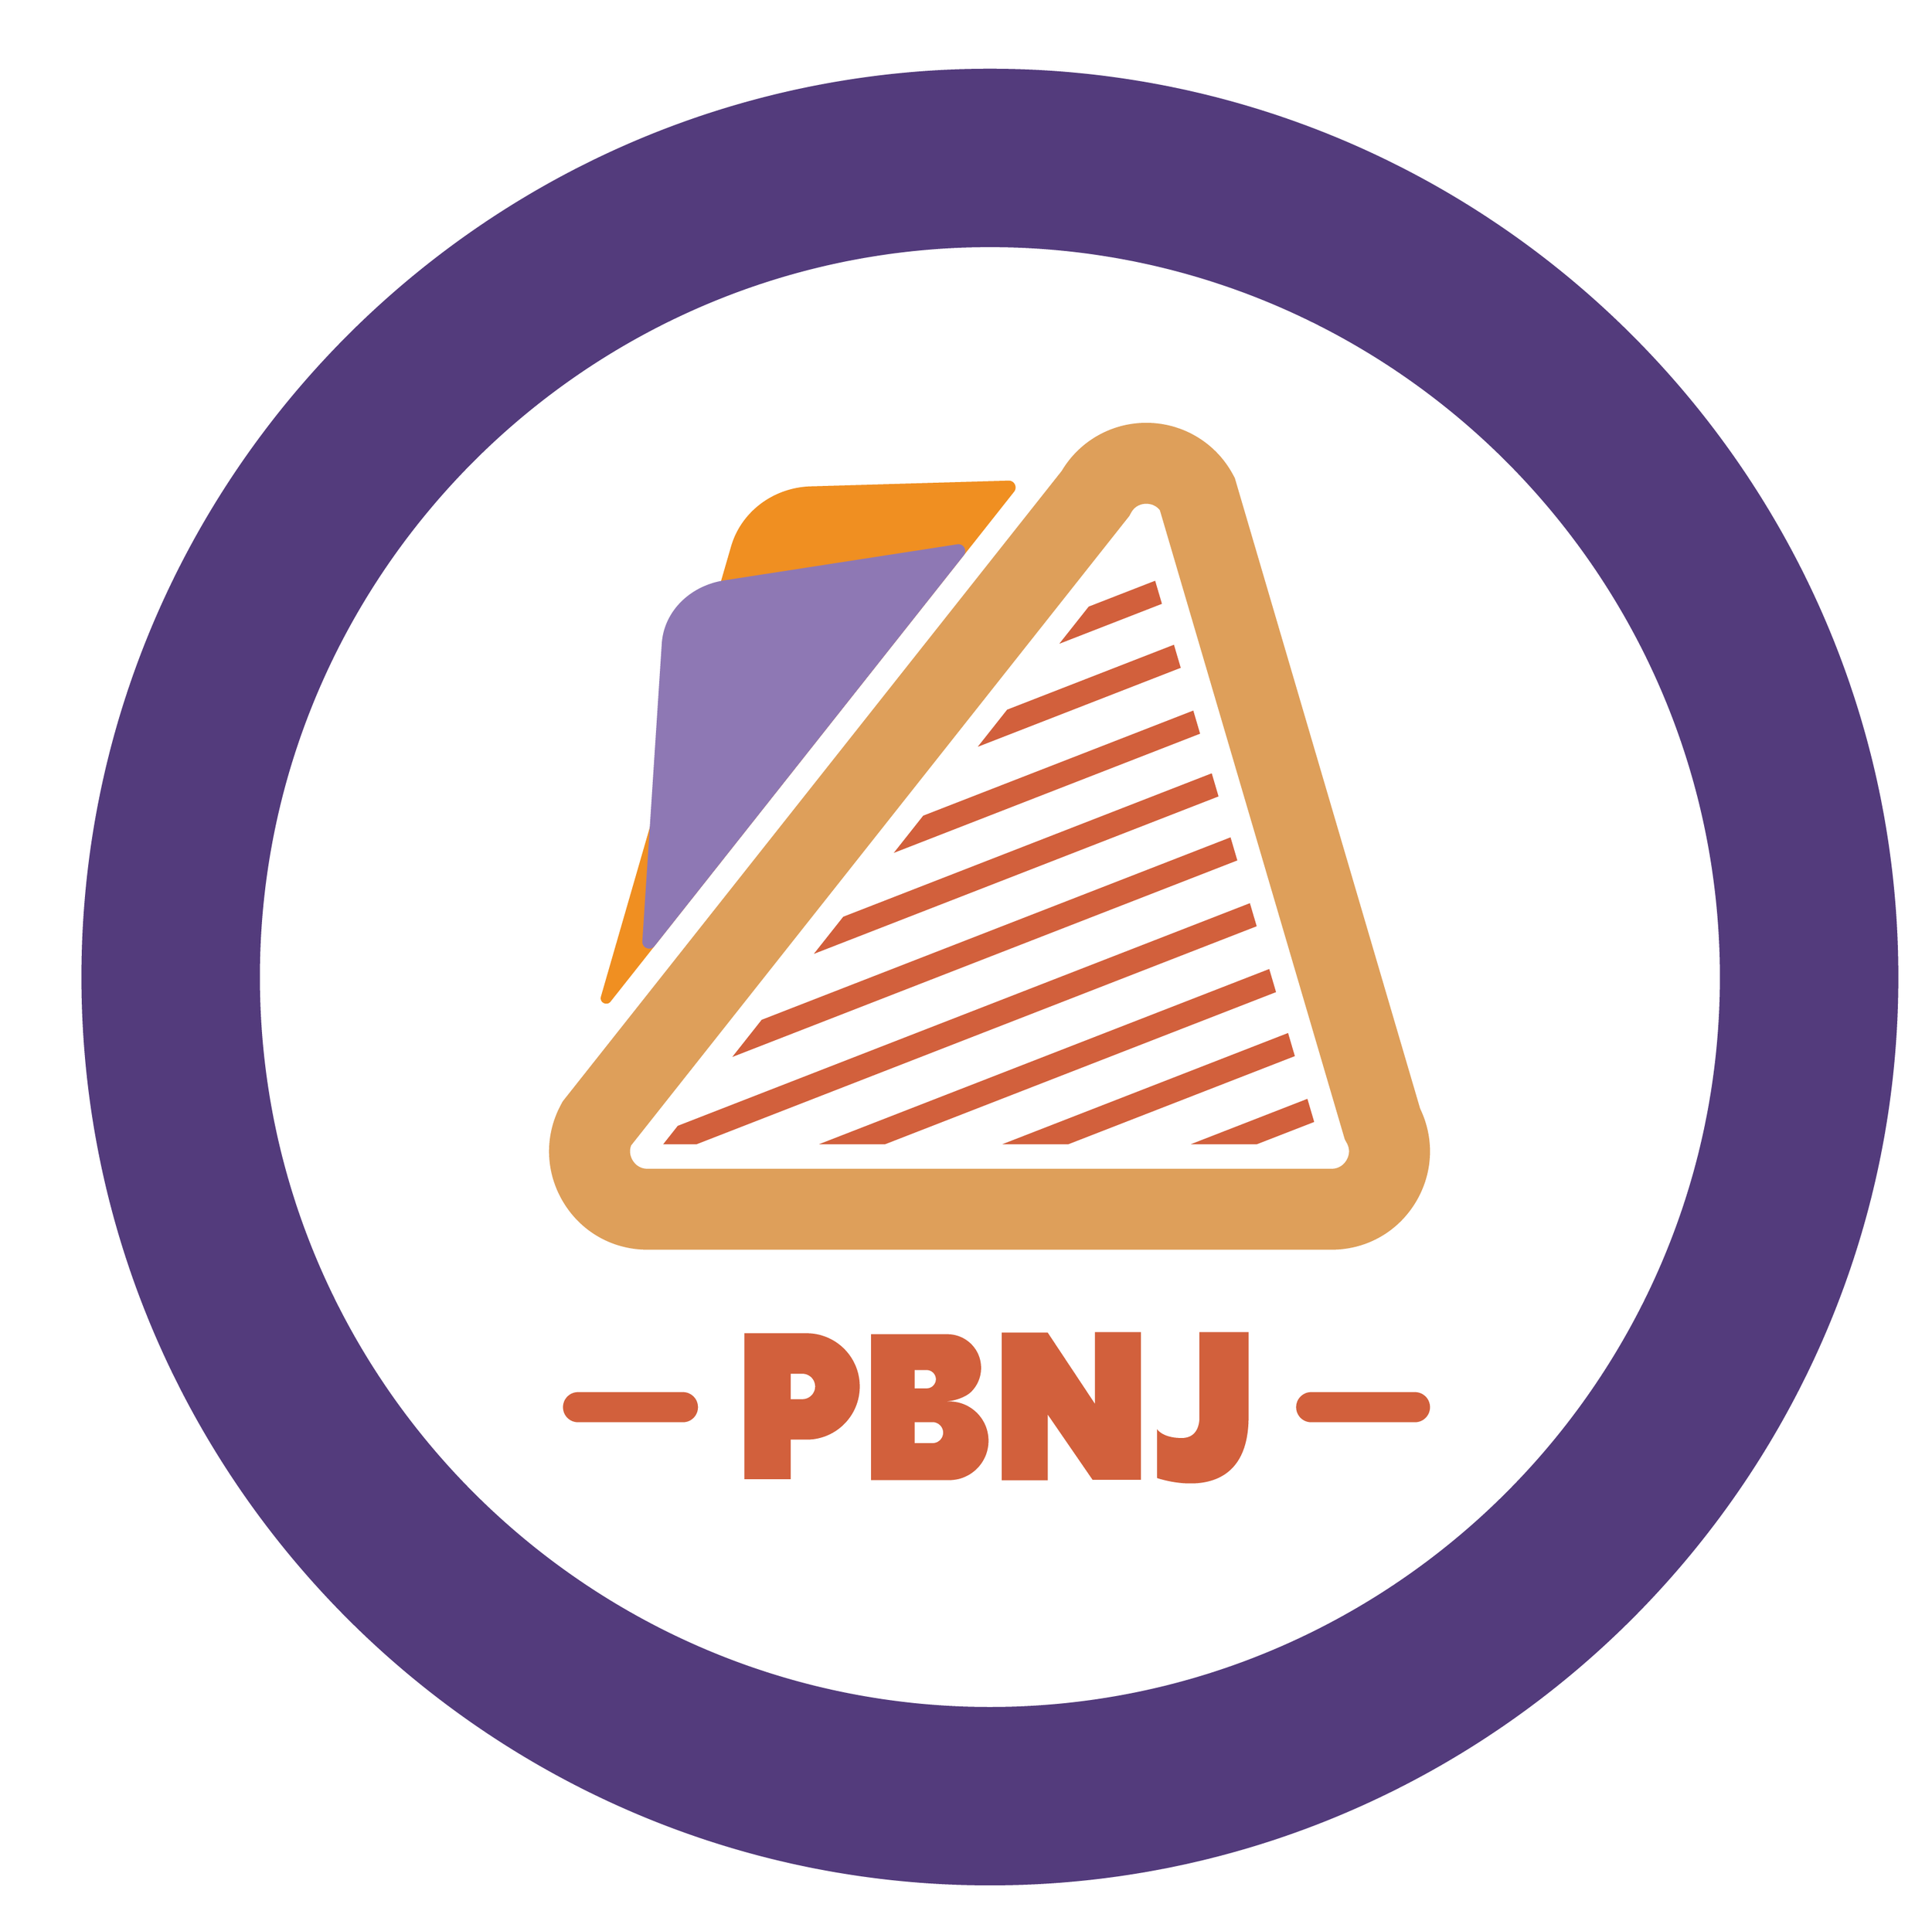 PBNJ_icons_Sandwich.png